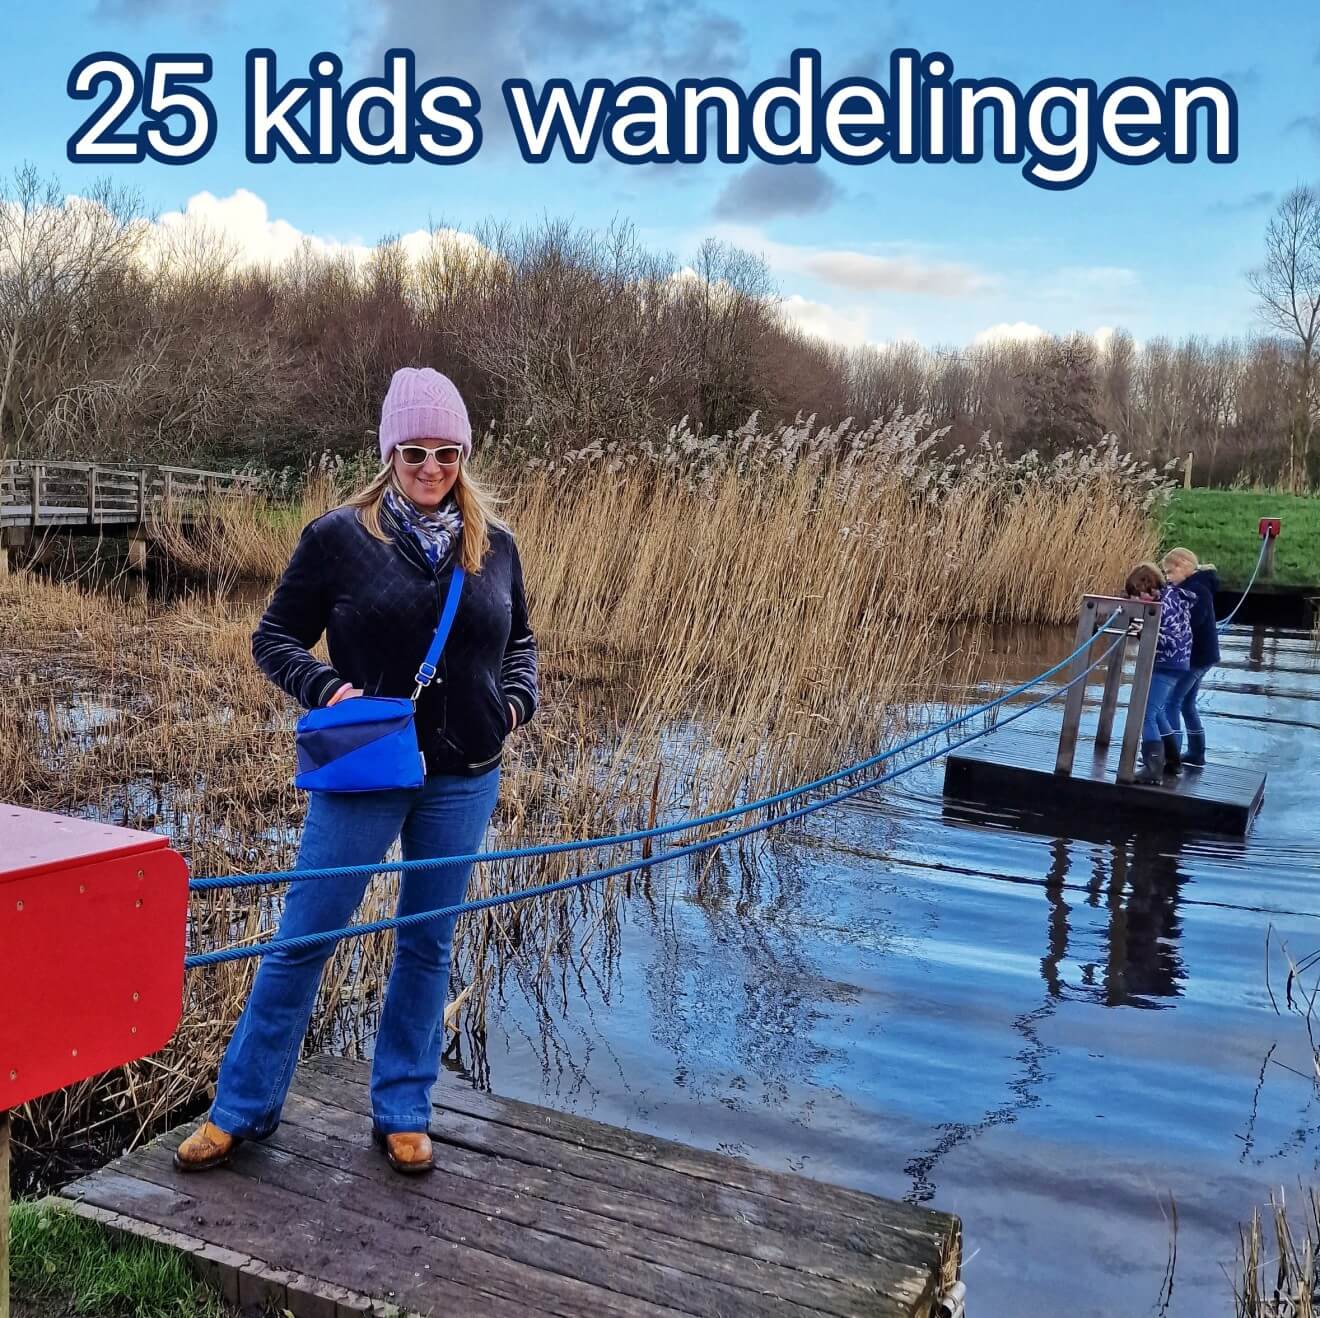 Wandelen met kinderen: onze favoriete wandelingen. Wandelen met kinderen saai? Onze kinderen vinden wandelen leuk. Maar we zoeken wel plekken waar ze ook wat te doen hebben. Dit zijn onze favoriete wandelingen en wandelgebieden in Nederland. De meeste met restaurant en speeltuin.